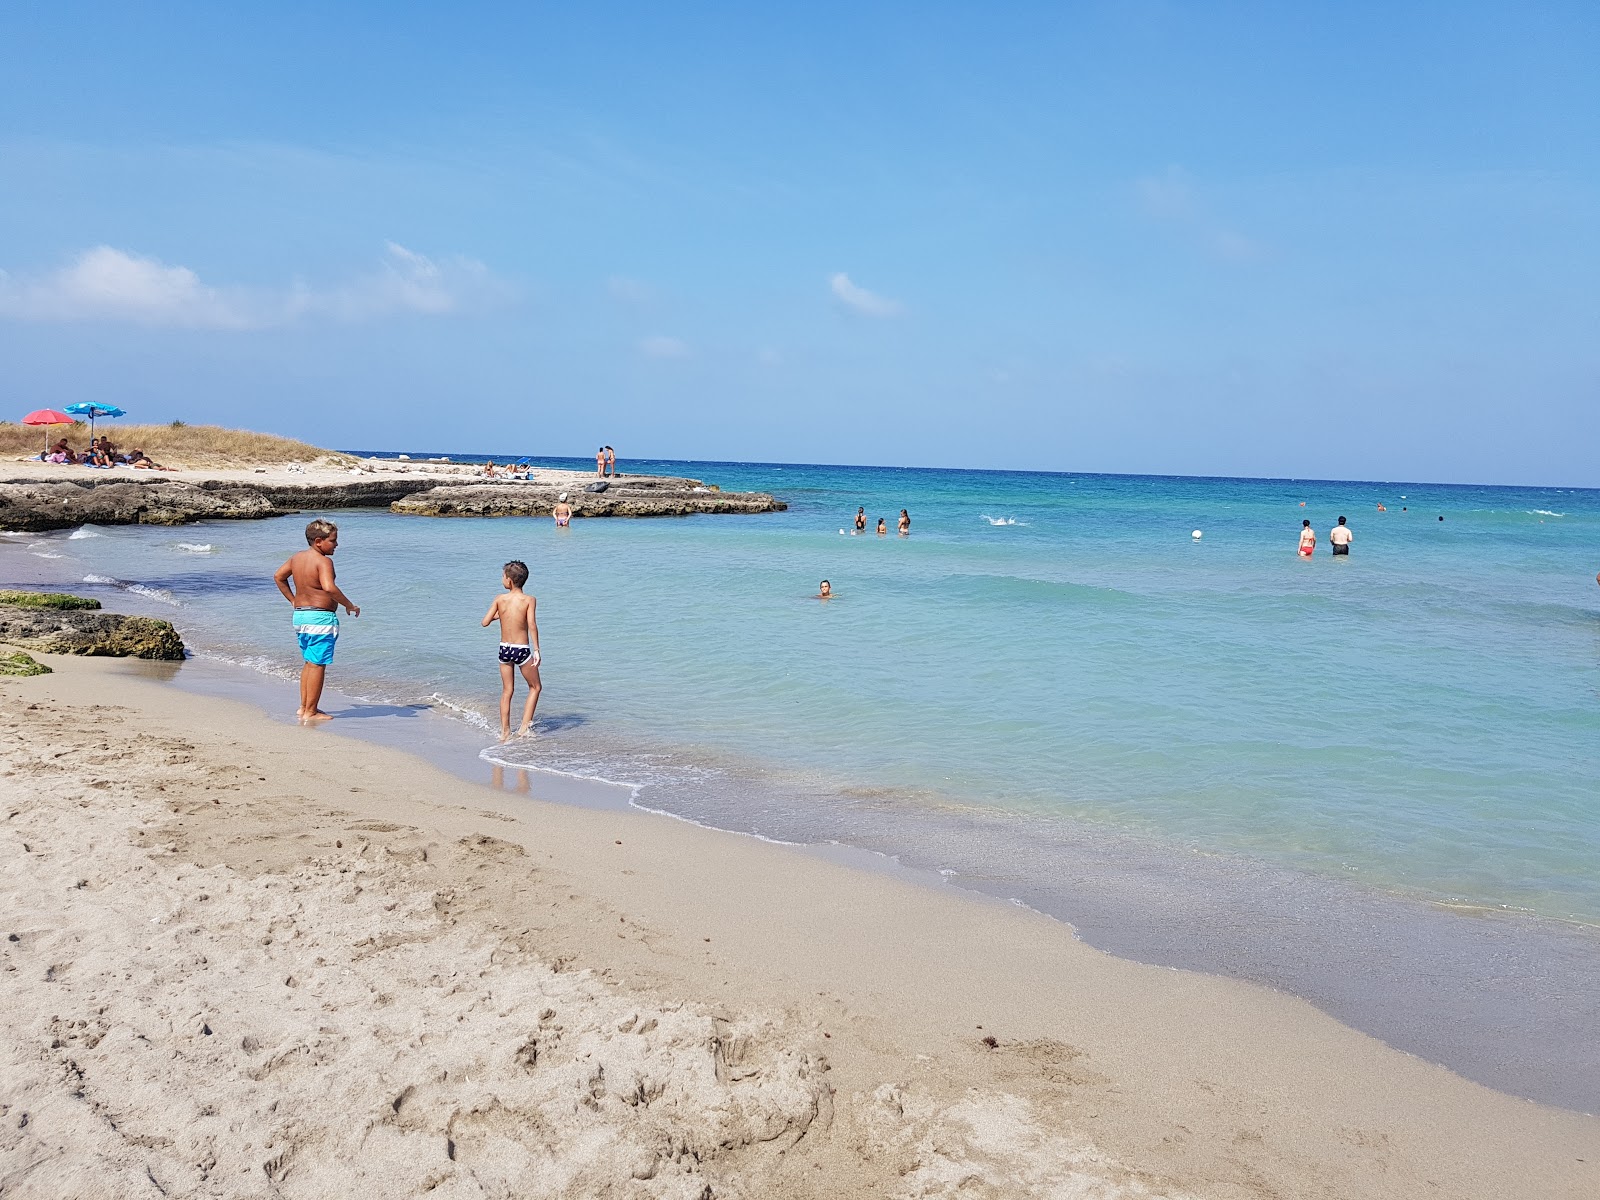 Foto von Spiaggia Mezzaluna mit kleine bucht